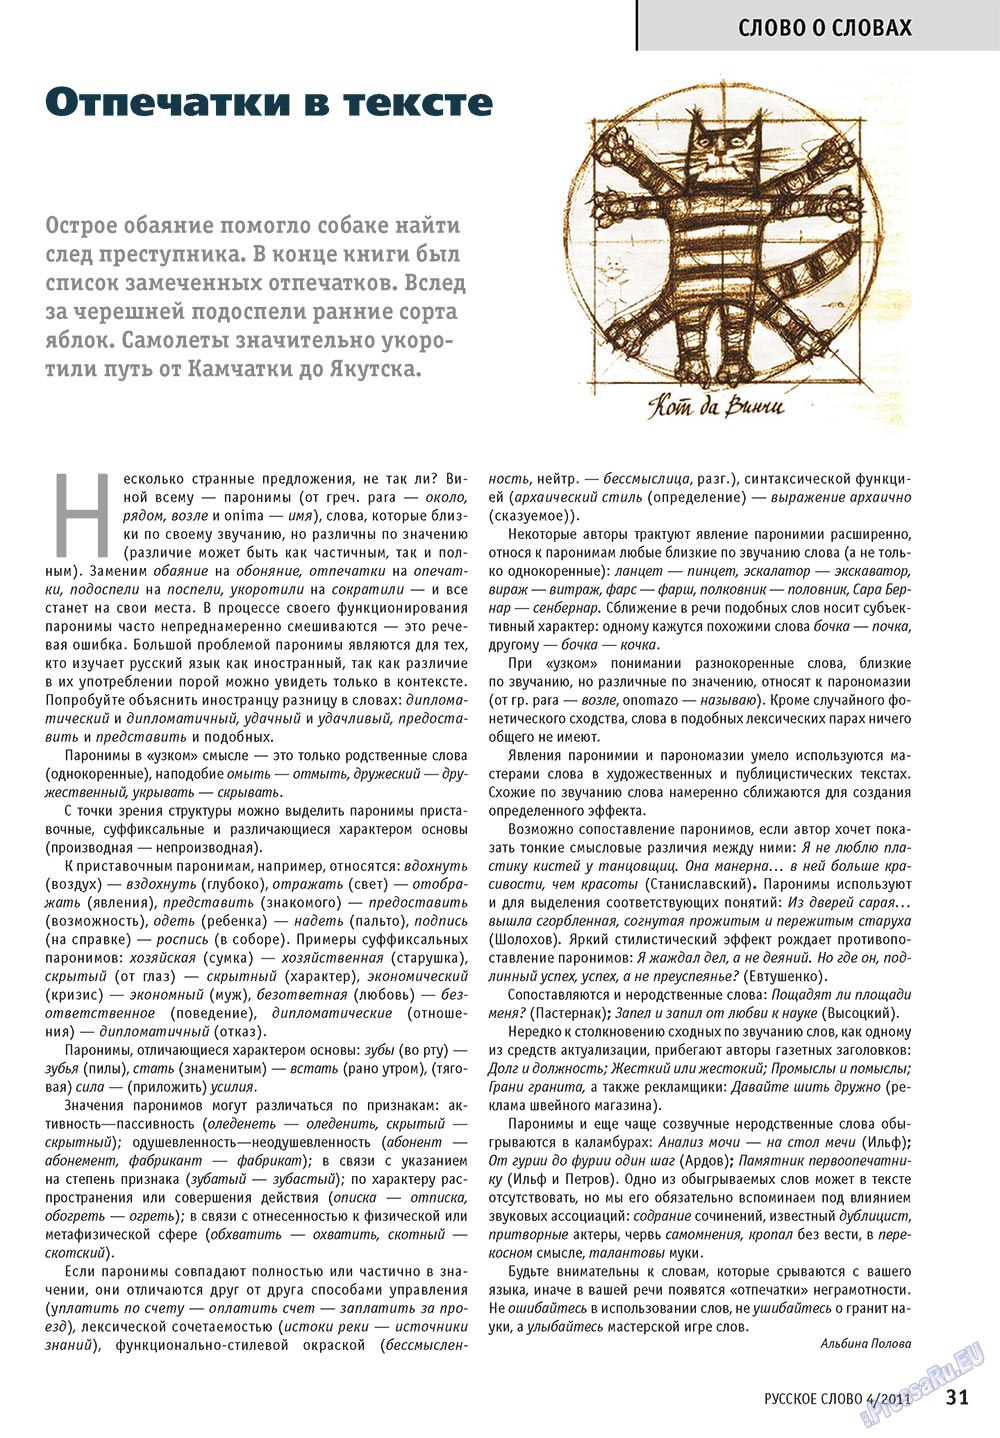 Русское слово, журнал. 2011 №4 стр.33